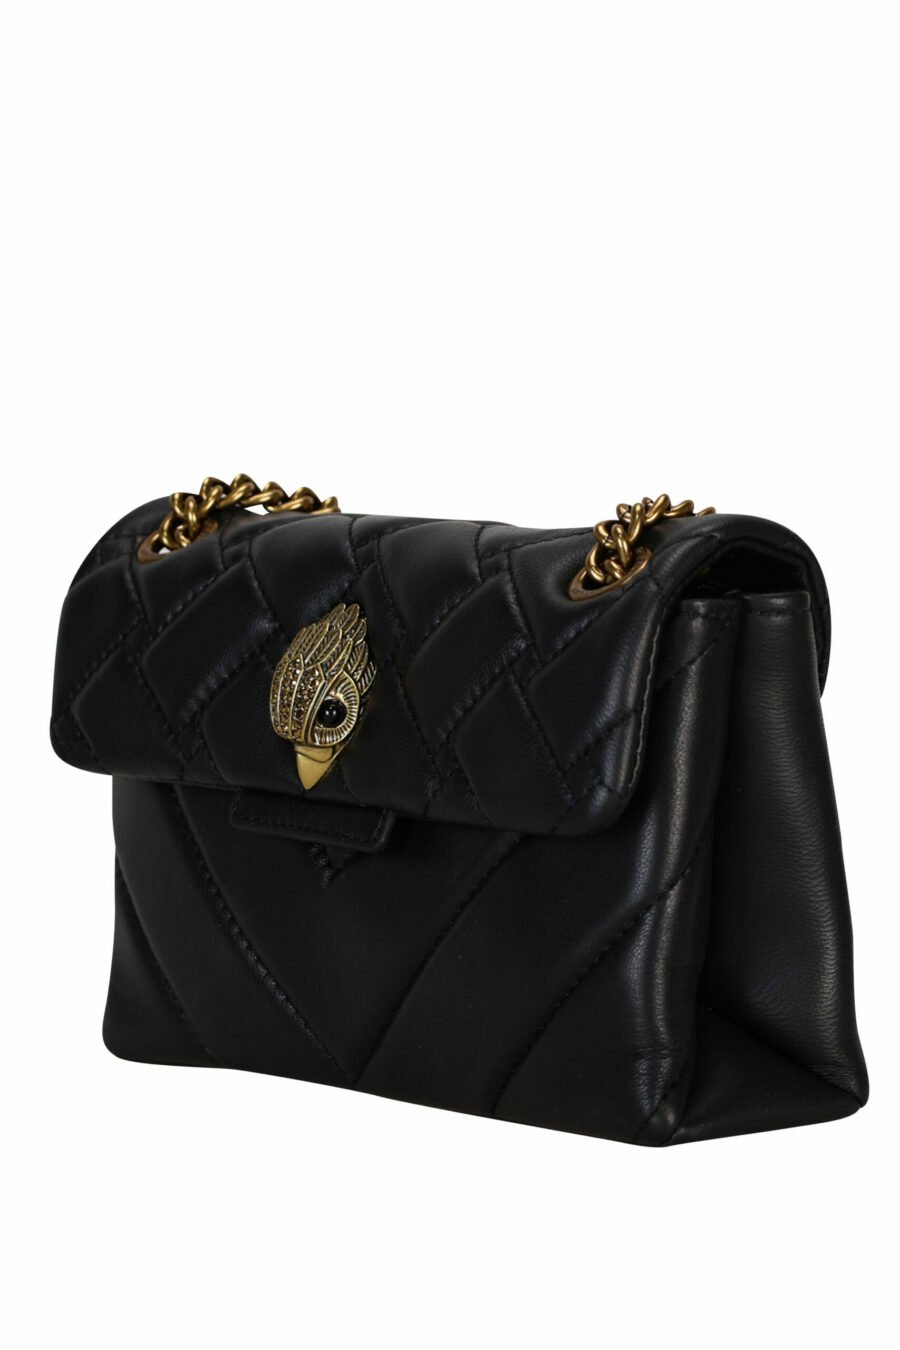 Mini sac à bandoulière matelassé noir avec logo aigle doré et cristaux noirs - 5057720813637 1 échelle